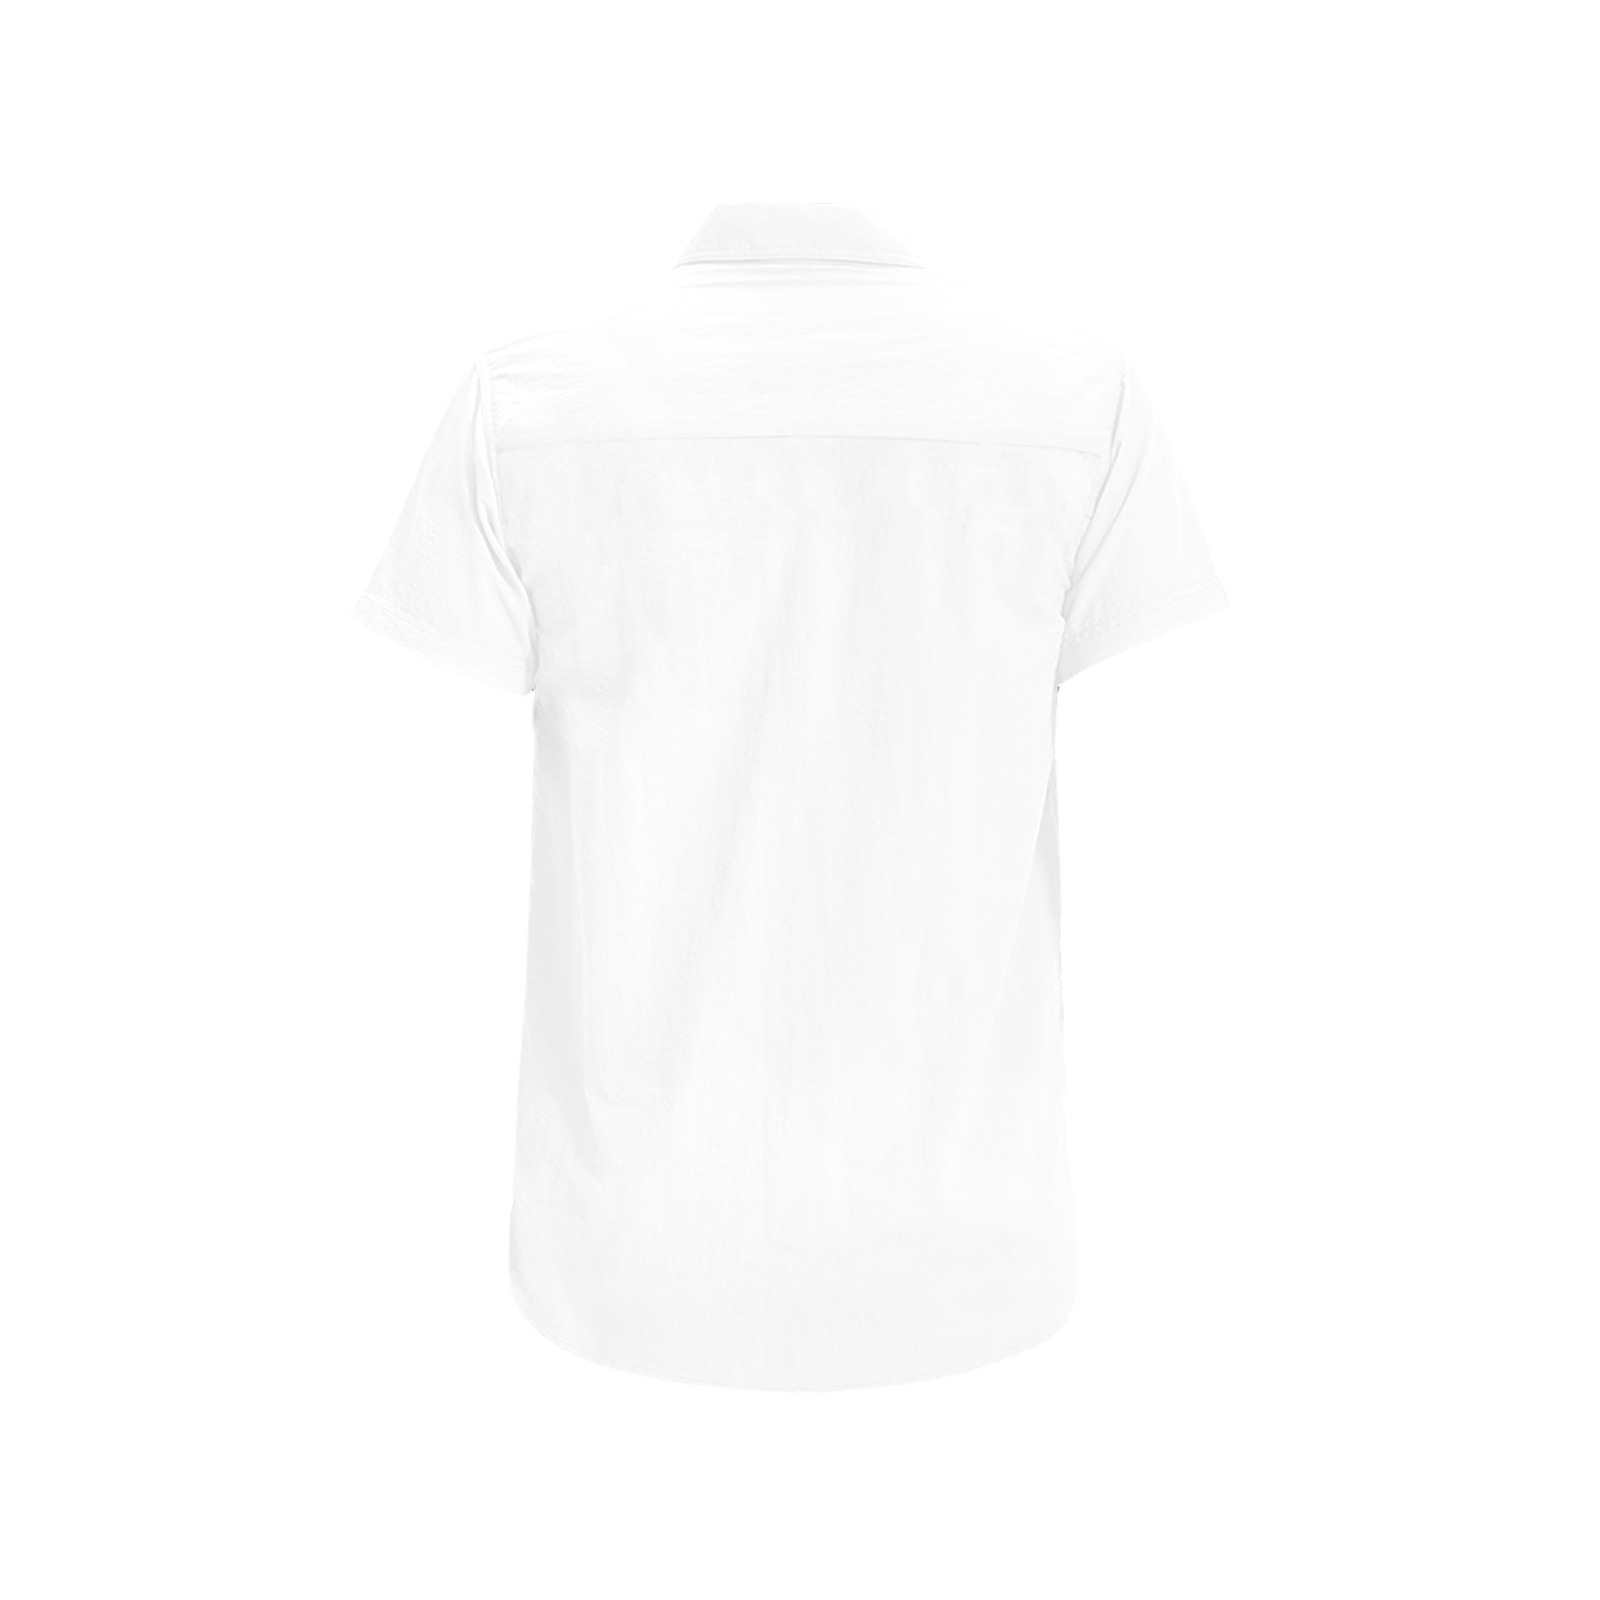 Eat Drink Dance Breakdance / White Men's All Over Print Short Sleeve Shirt (Model T53)